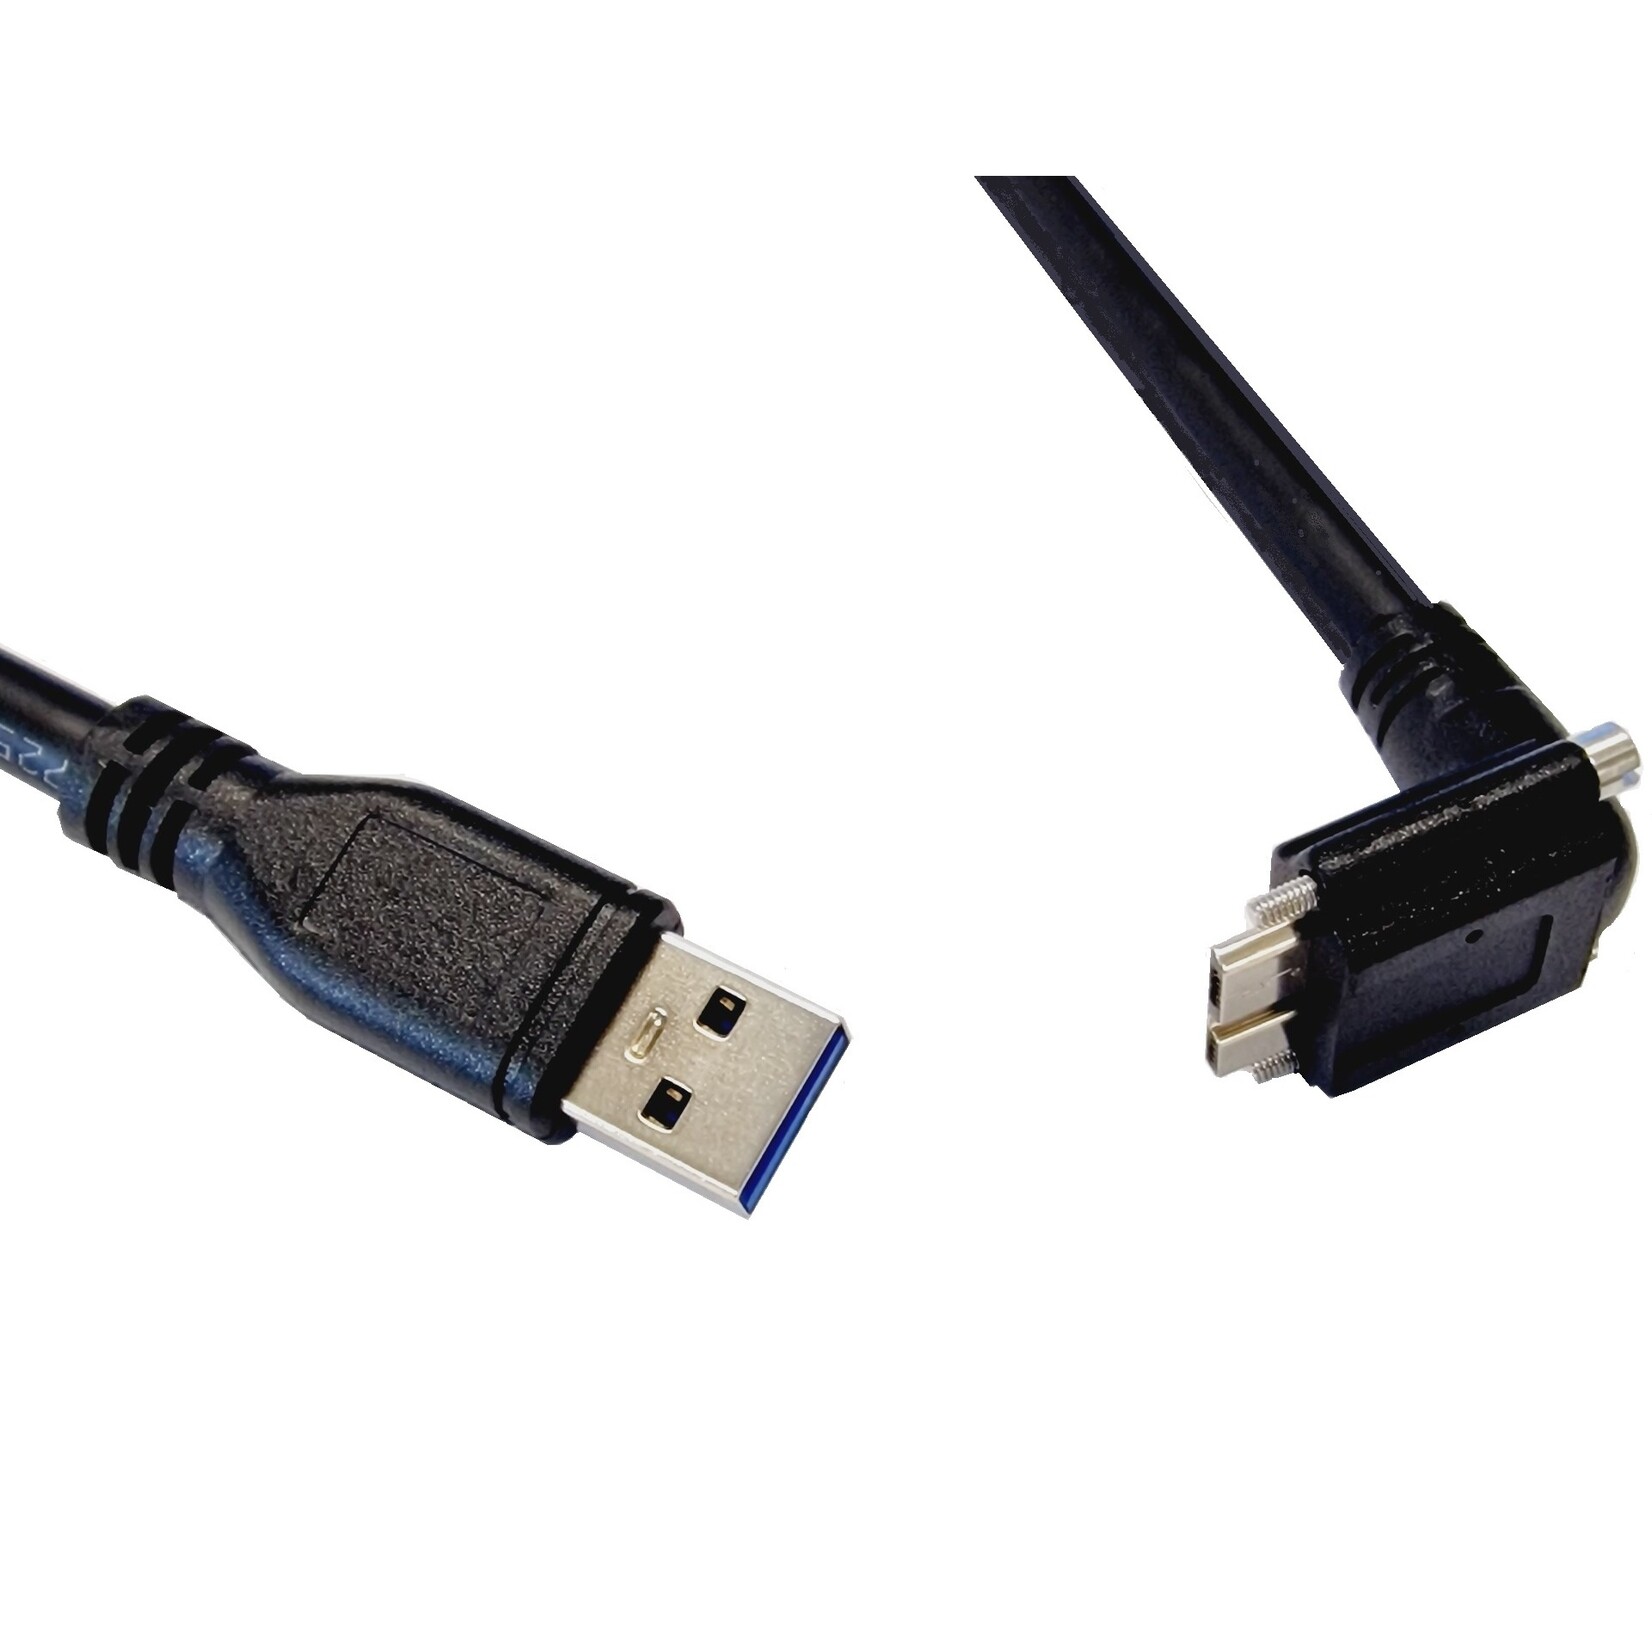 Cavo standard USB 3, USB Mico B con viti angolate verso il retro in 3 metri di lunghezza